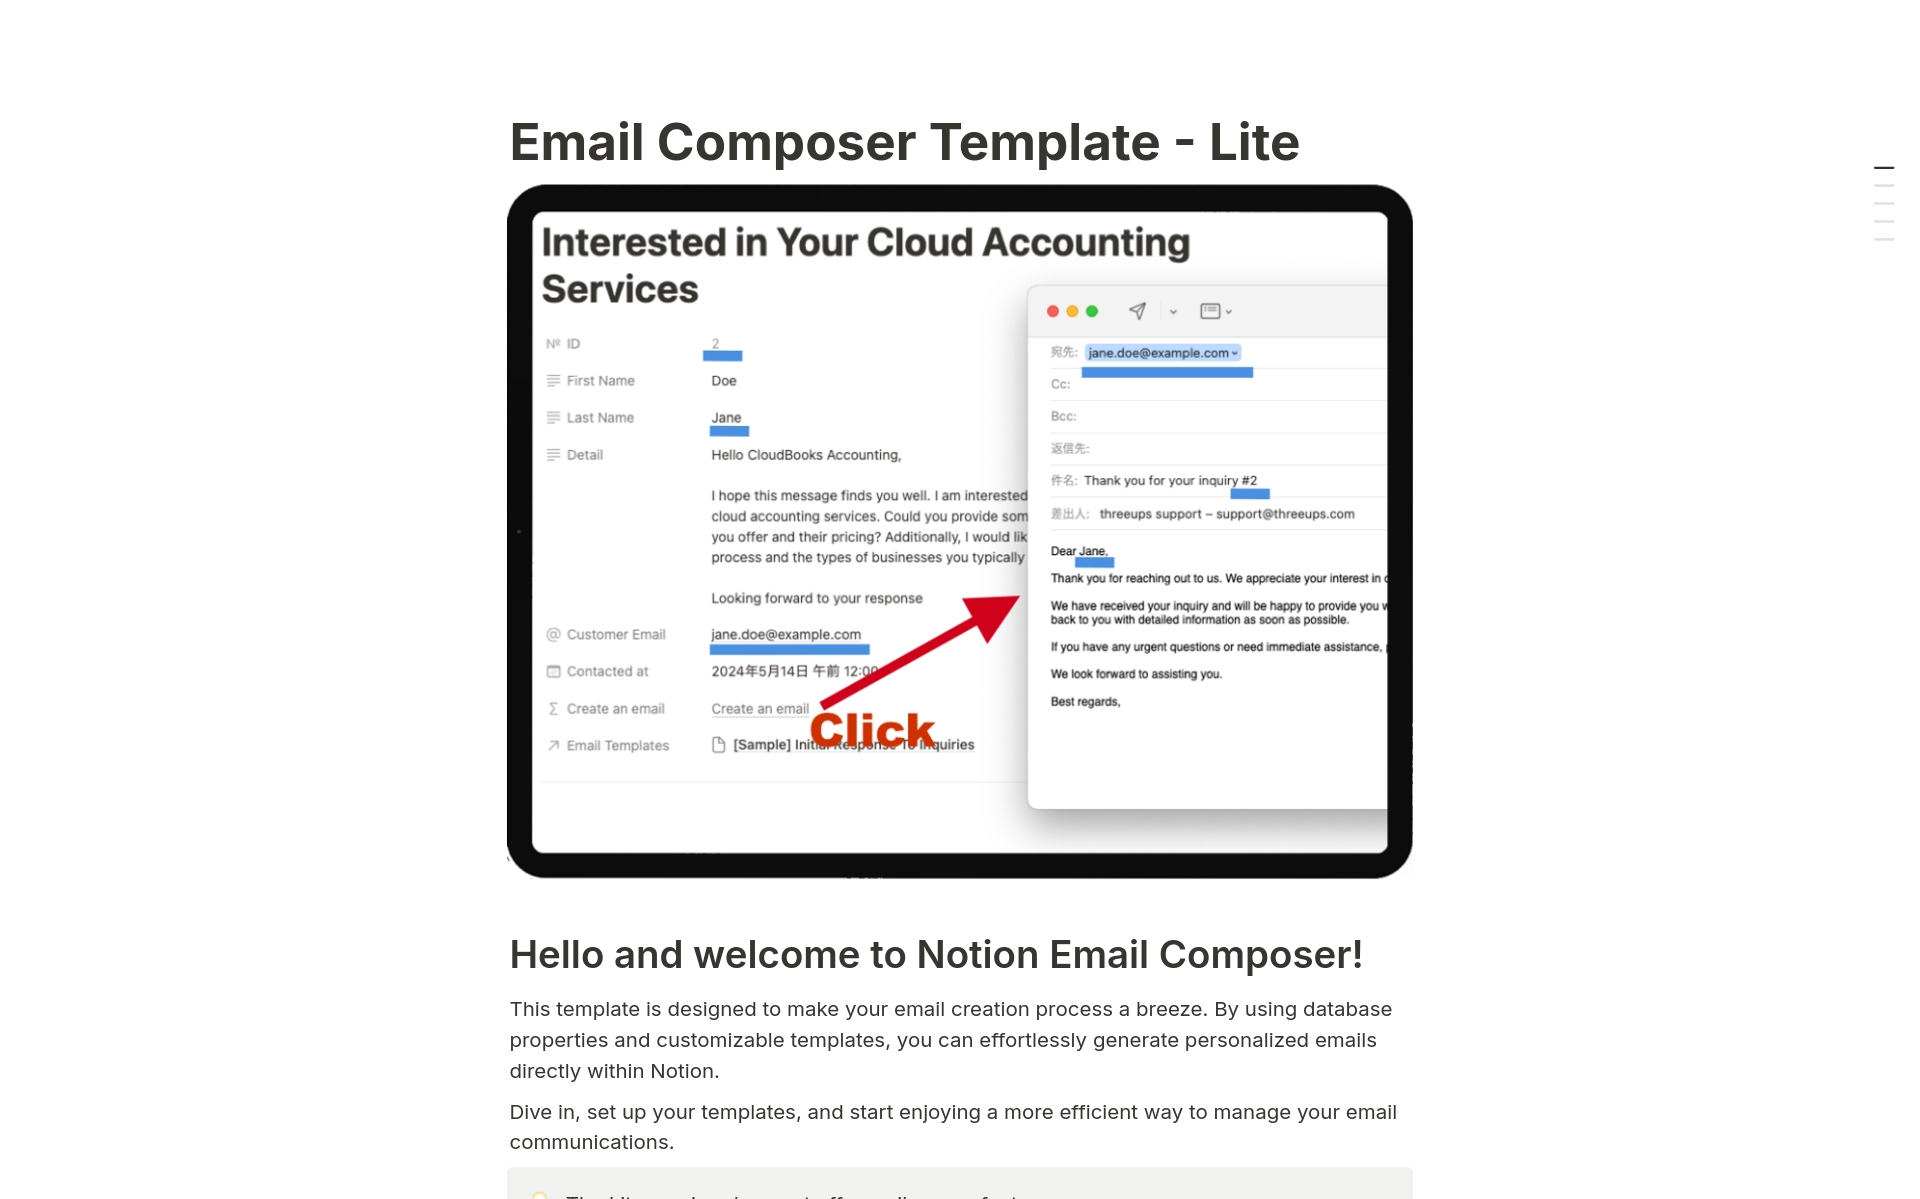 Uma prévia do modelo para Email Composer Lite